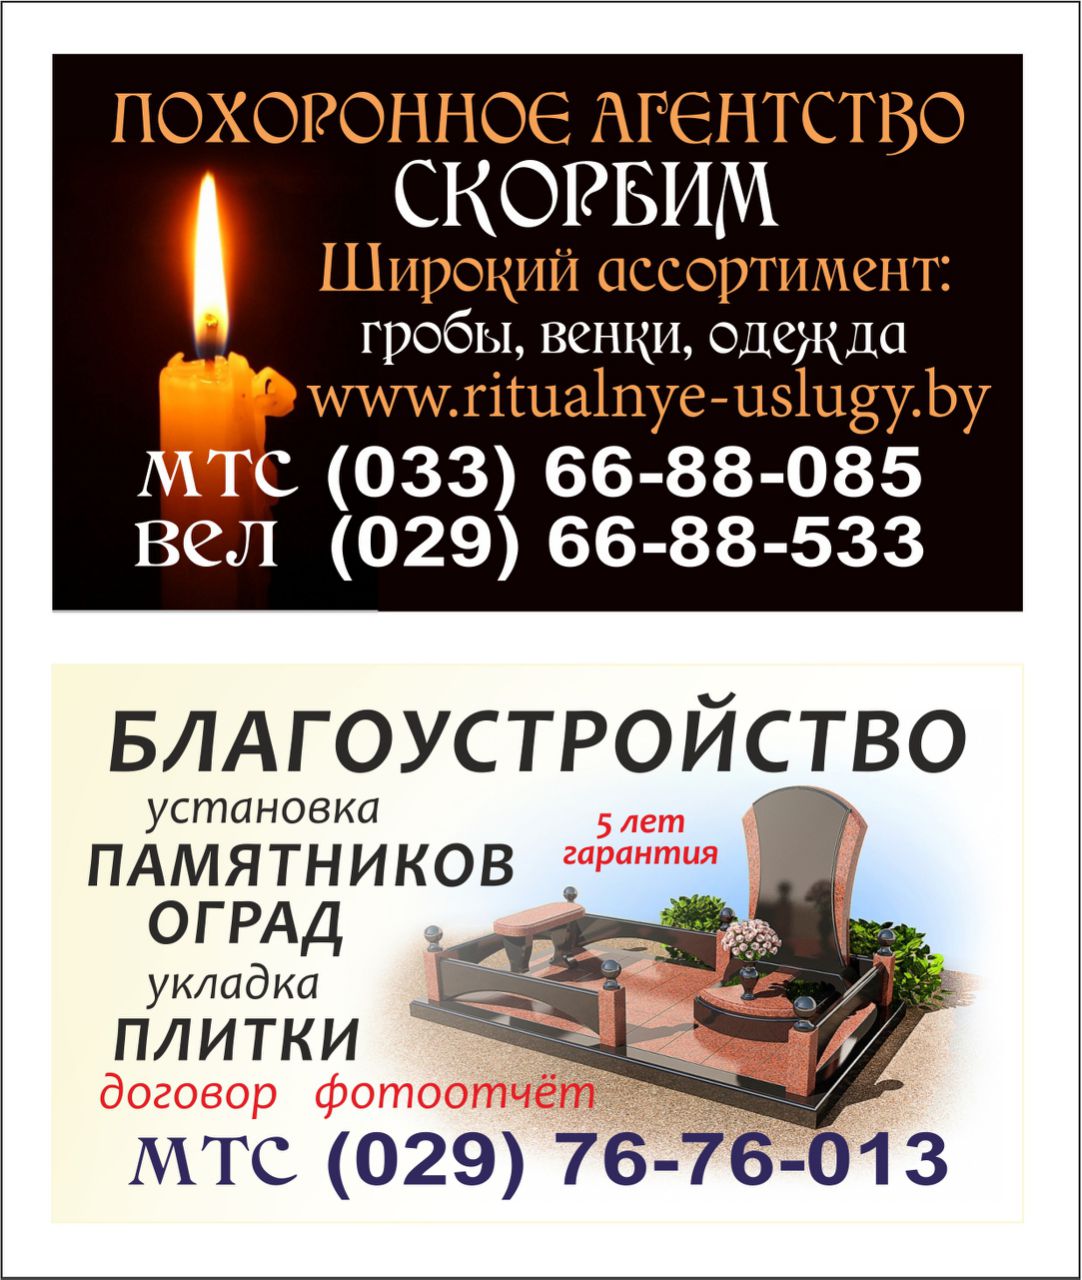 Ритуальные услуги в Минске